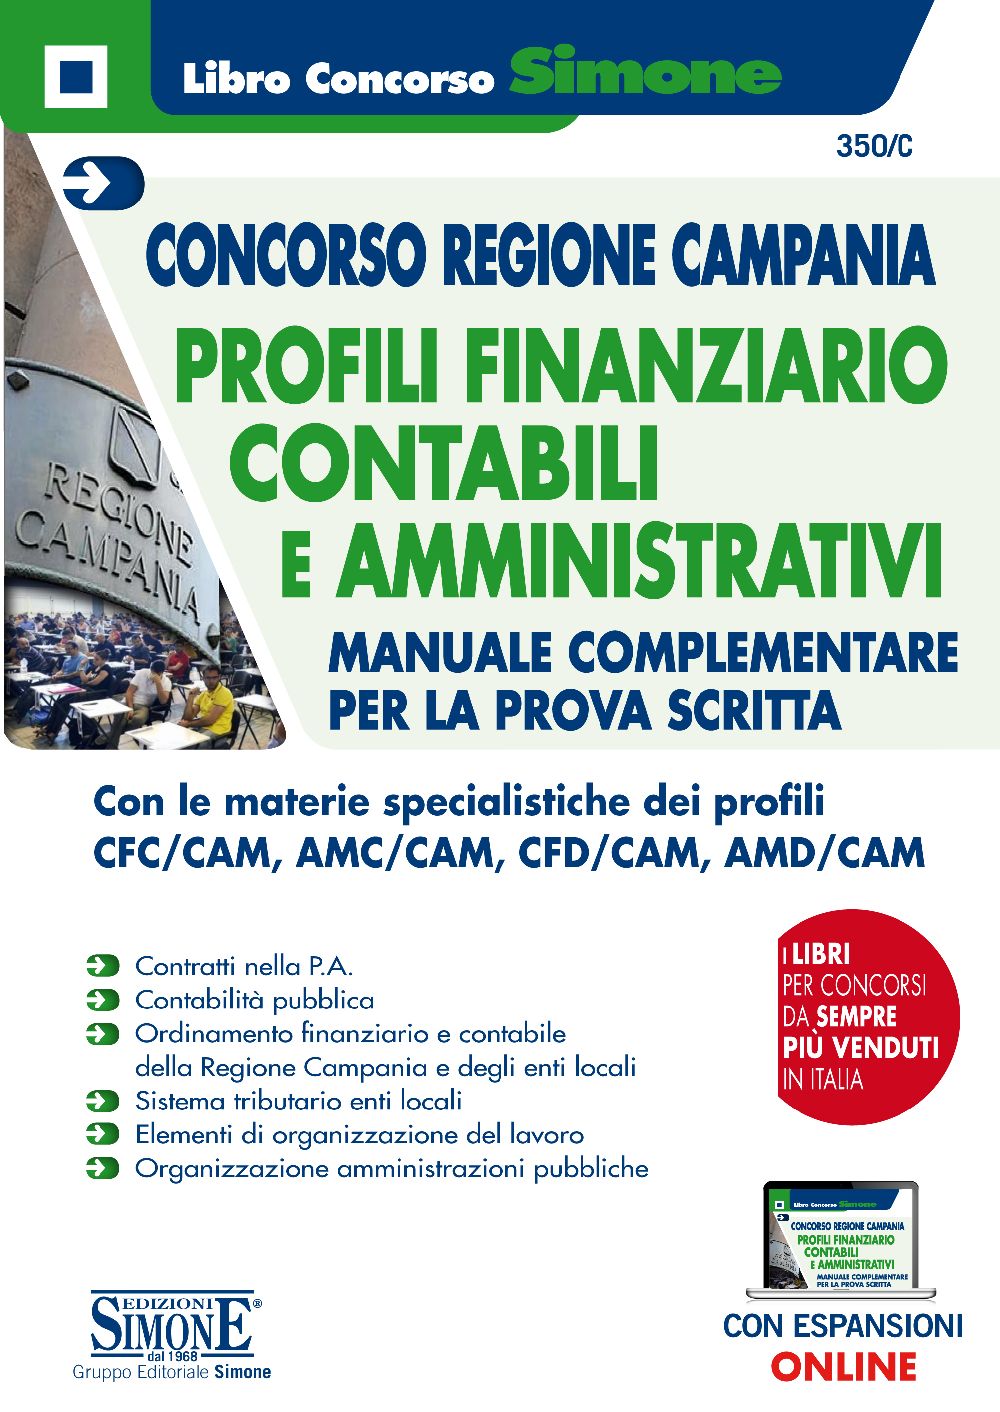 Concorso Regione Campania - Profili Finanziario-Contabili e Amministrativi - Manuale complementare per la prova scritta